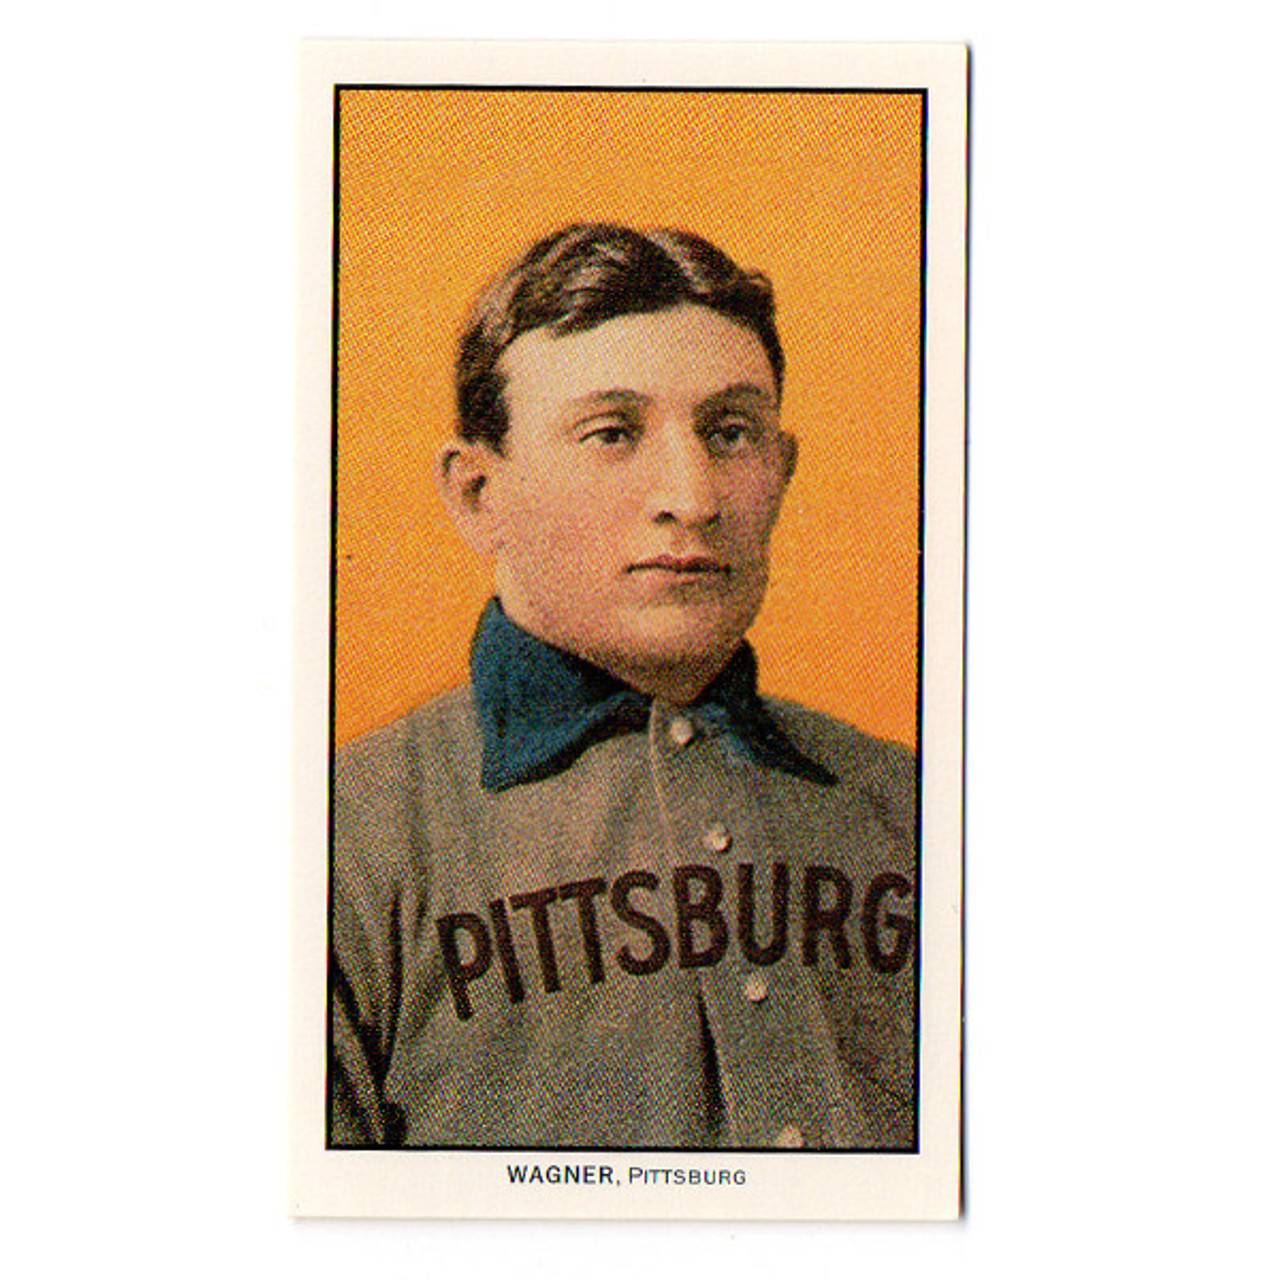 Honus Wagner: Honus Wagner rookie baseball card goes under the